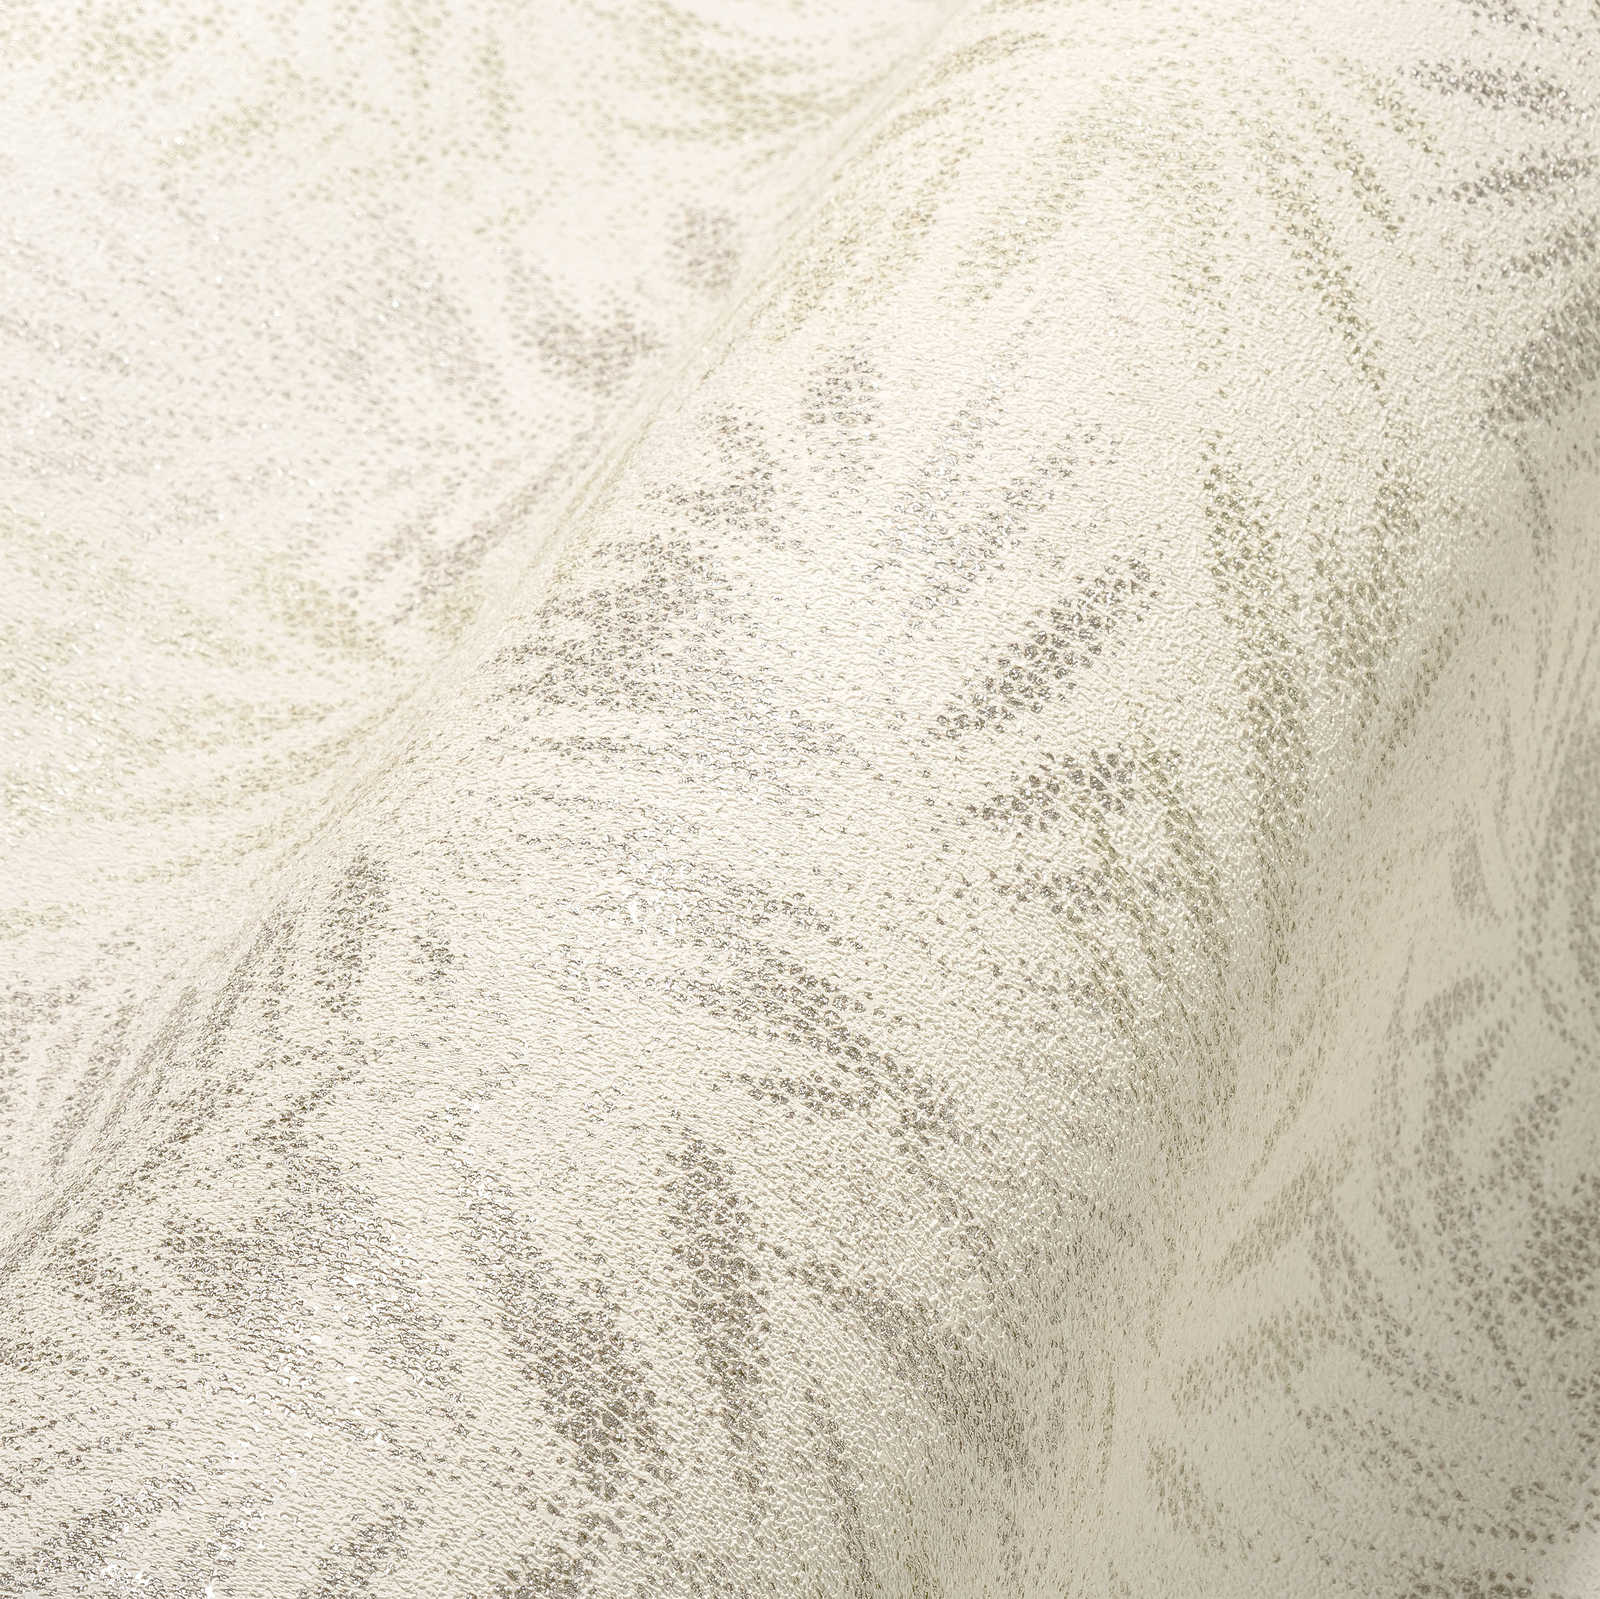             Vliestapete mit glänzenden Blättermuster – Weiß, Grau, Silber
        